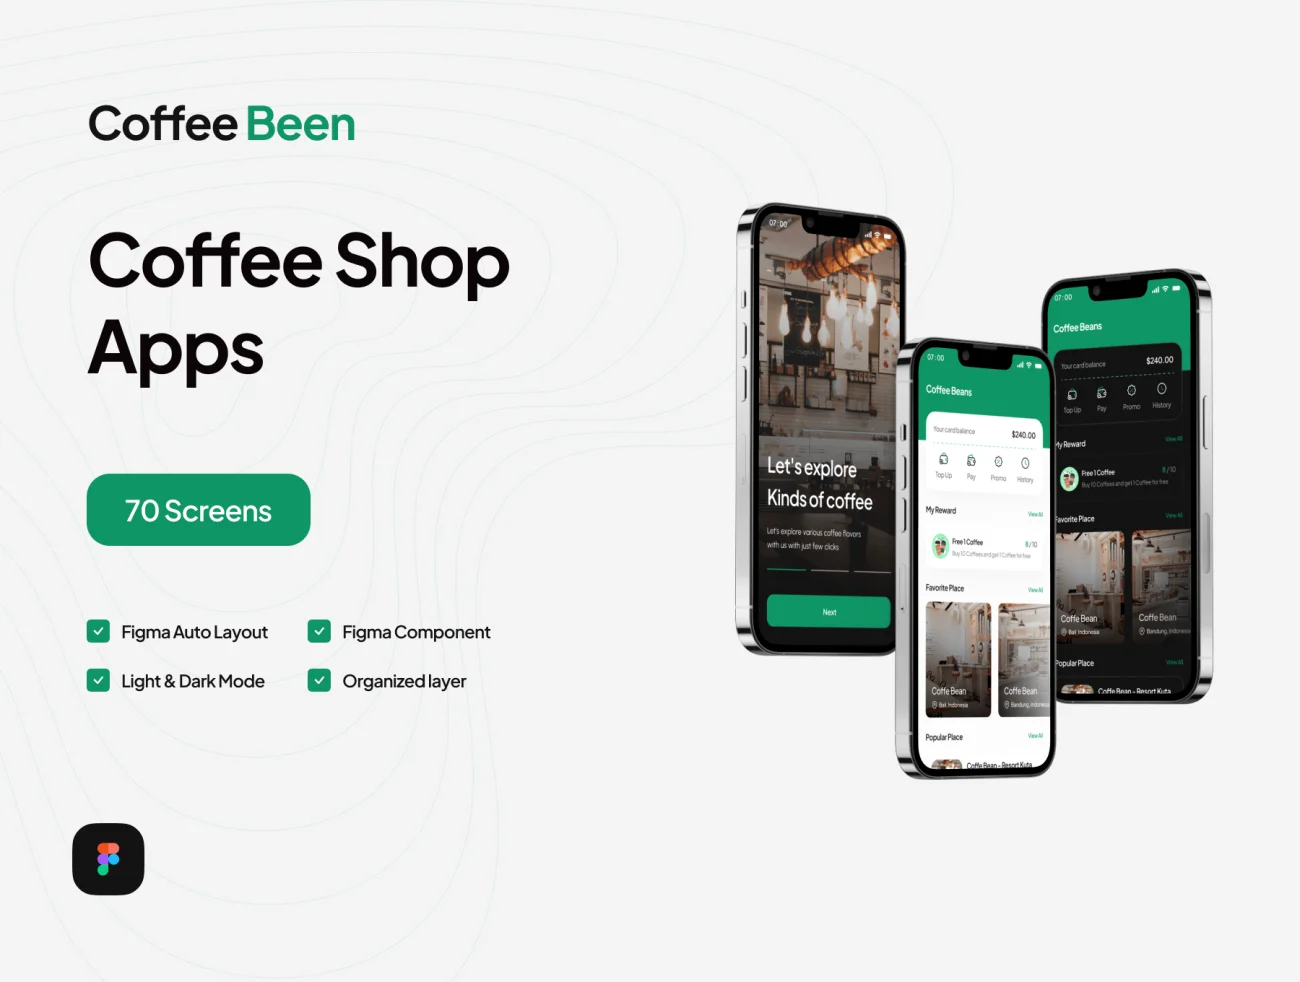 35屏咖啡店手机应用UI设计套件 Cofee Been - Coffee Shop Mobile App .figma-UI/UX、ui套件、主页、付款、地图、应用、预订-到位啦UI